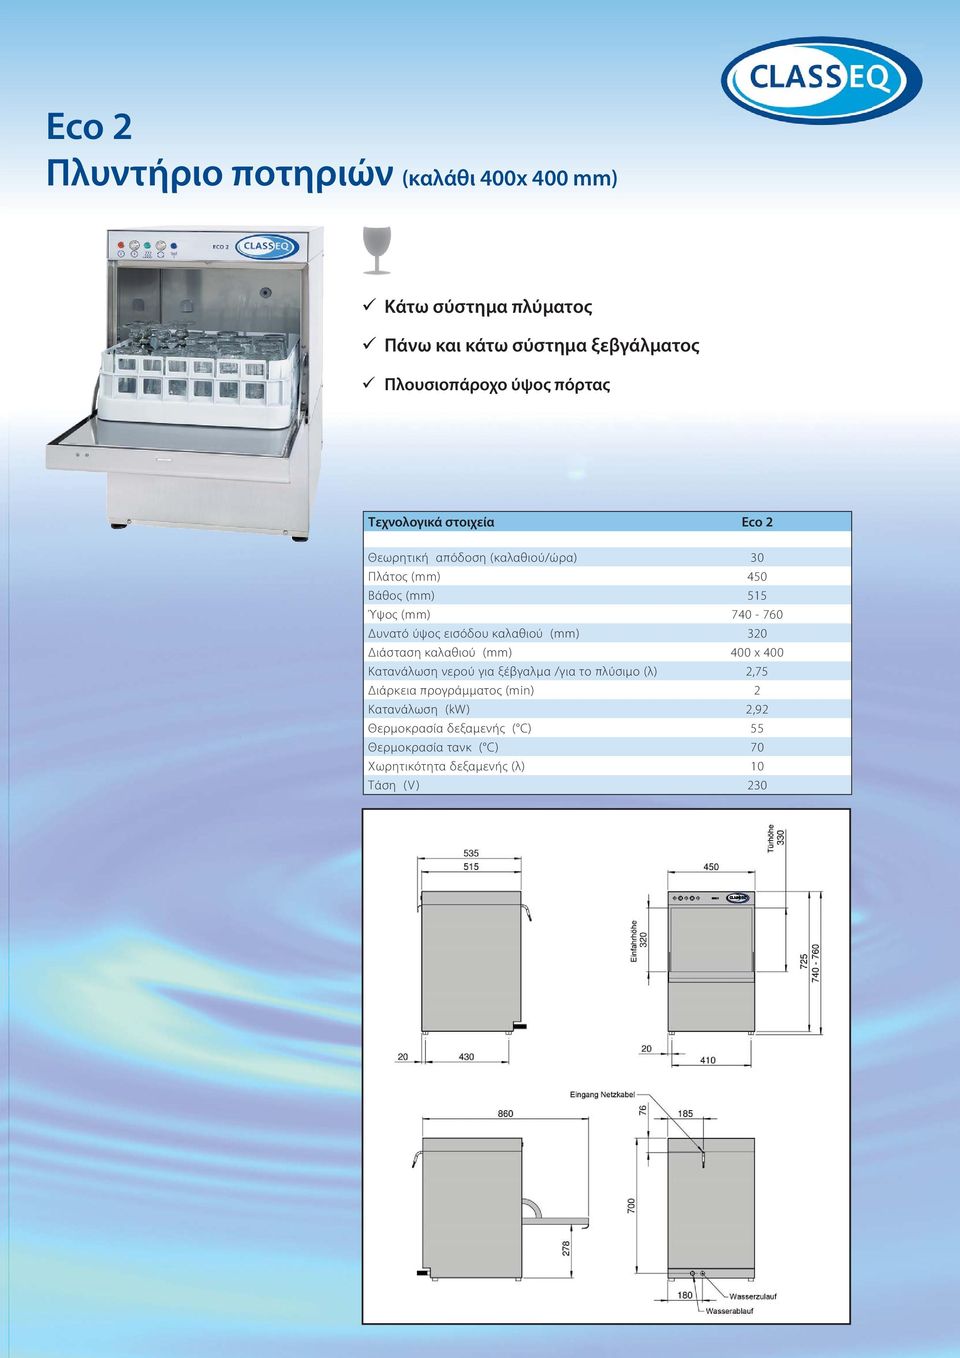 εισόδου καλαθιού (mm) 320 Διάσταση καλαθιού (mm) 400 x 400 Κατανάλωση νερού για ξέβγαλμα /για το πλύσιμο (λ) 2,75 Διάρκεια